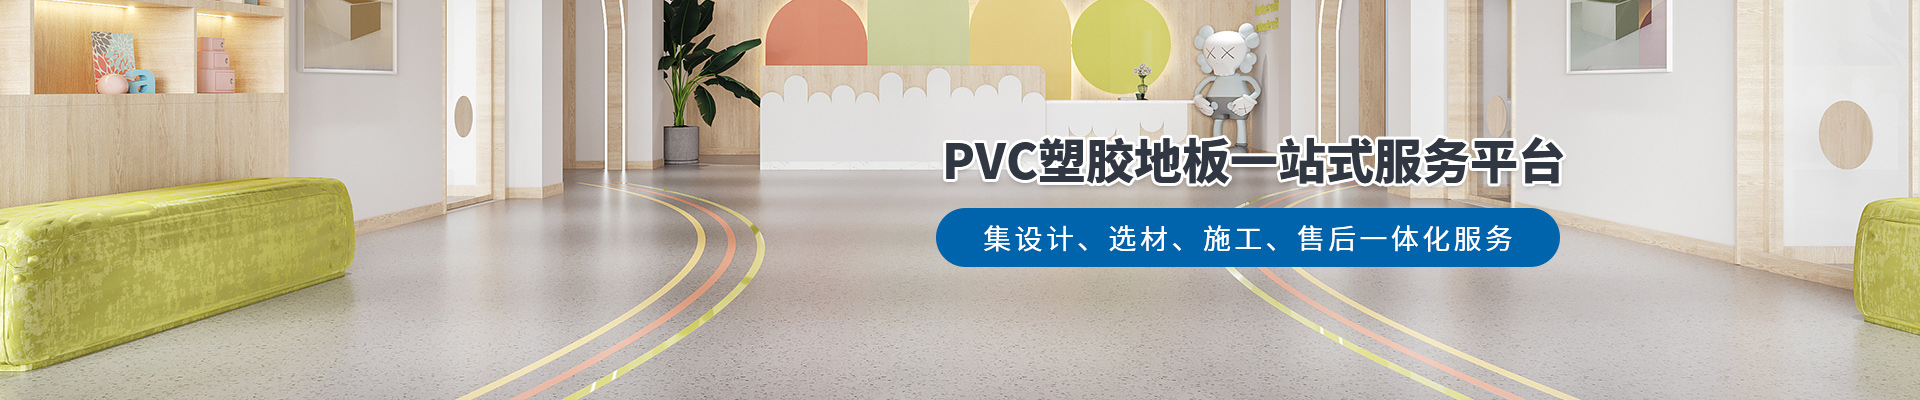 鳳城橡塑，PVC塑膠地板一站式服務平臺